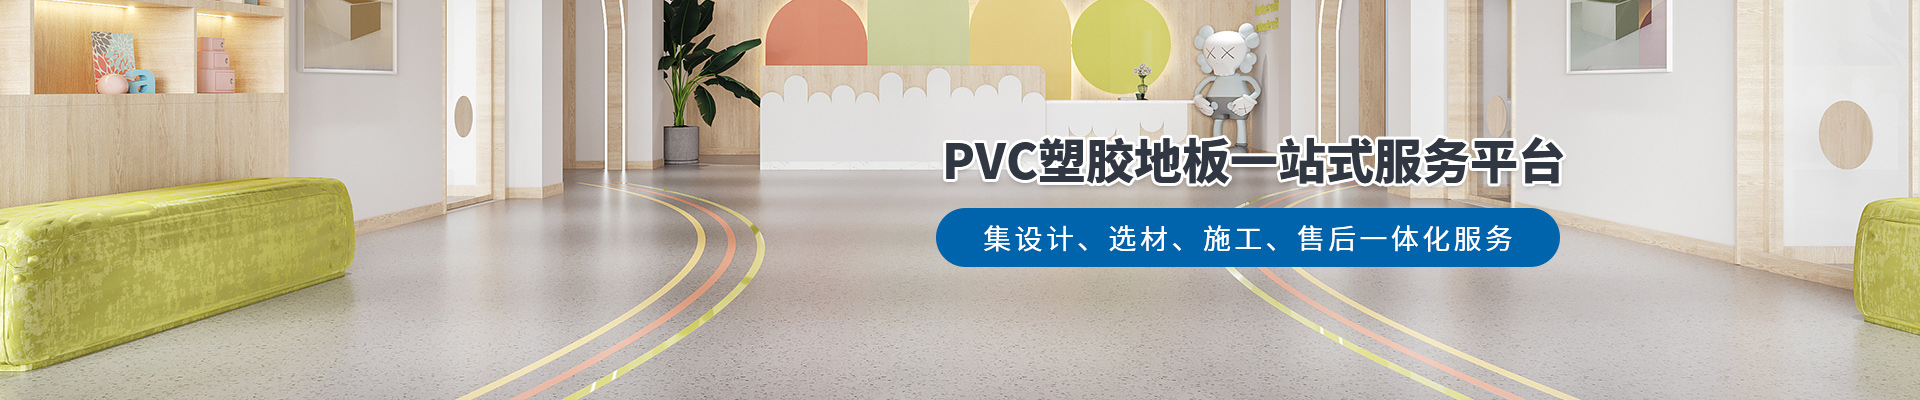 鳳城橡塑，PVC塑膠地板一站式服務平臺